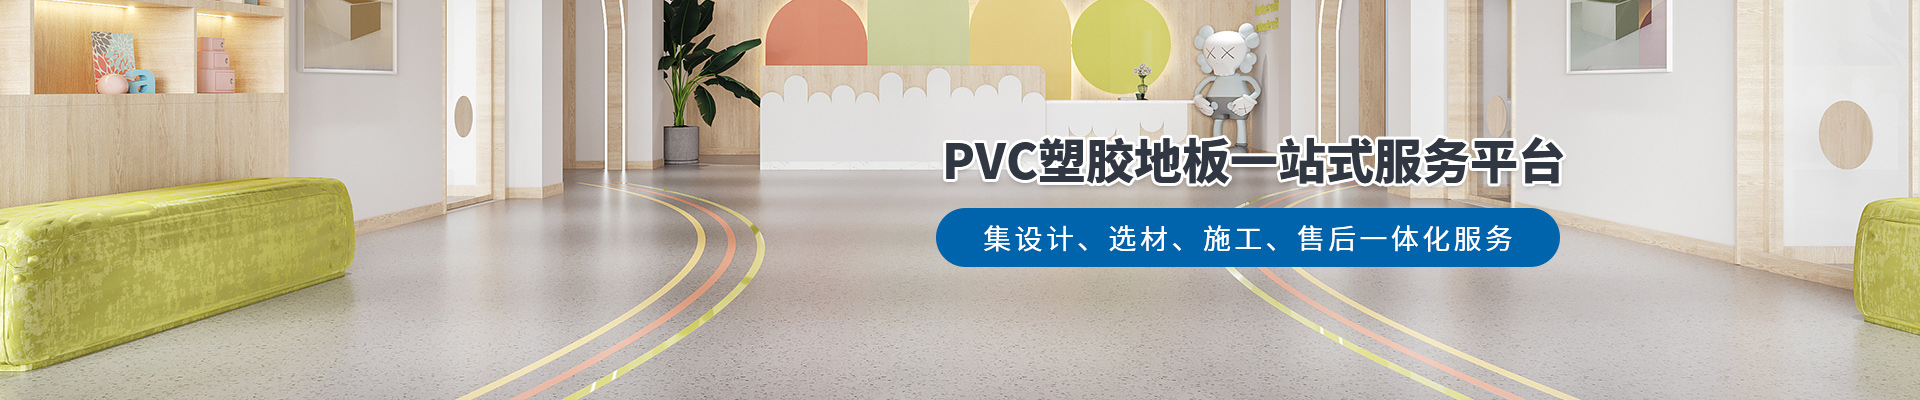 鳳城橡塑，PVC塑膠地板一站式服務平臺